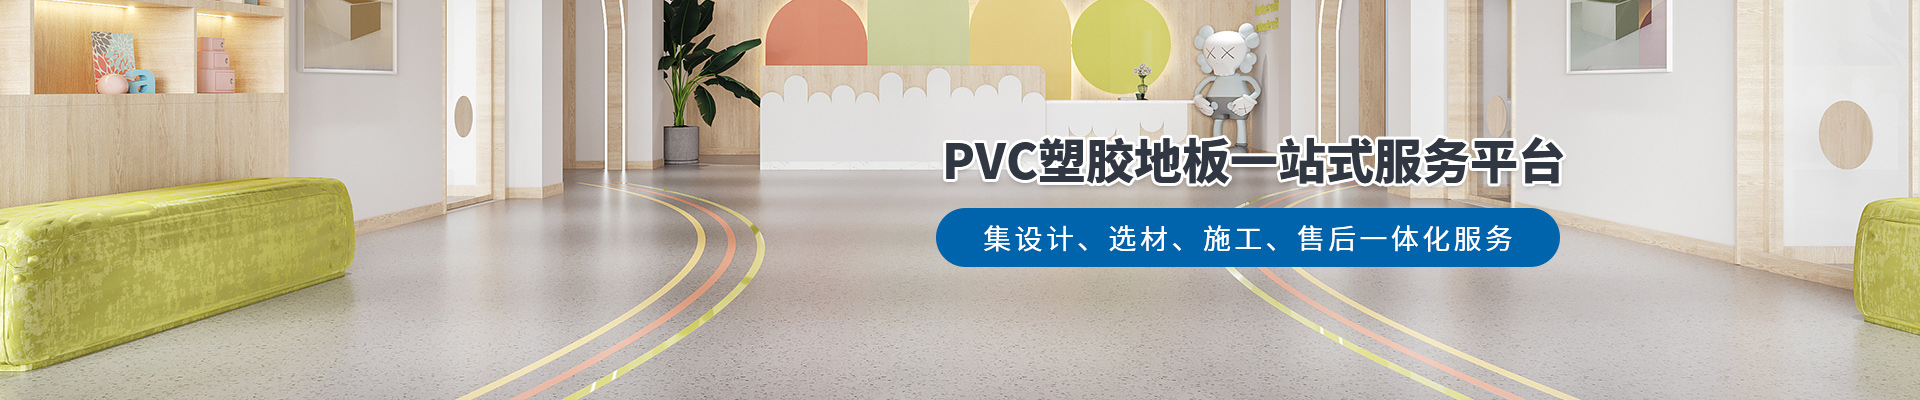 鳳城橡塑，PVC塑膠地板一站式服務平臺